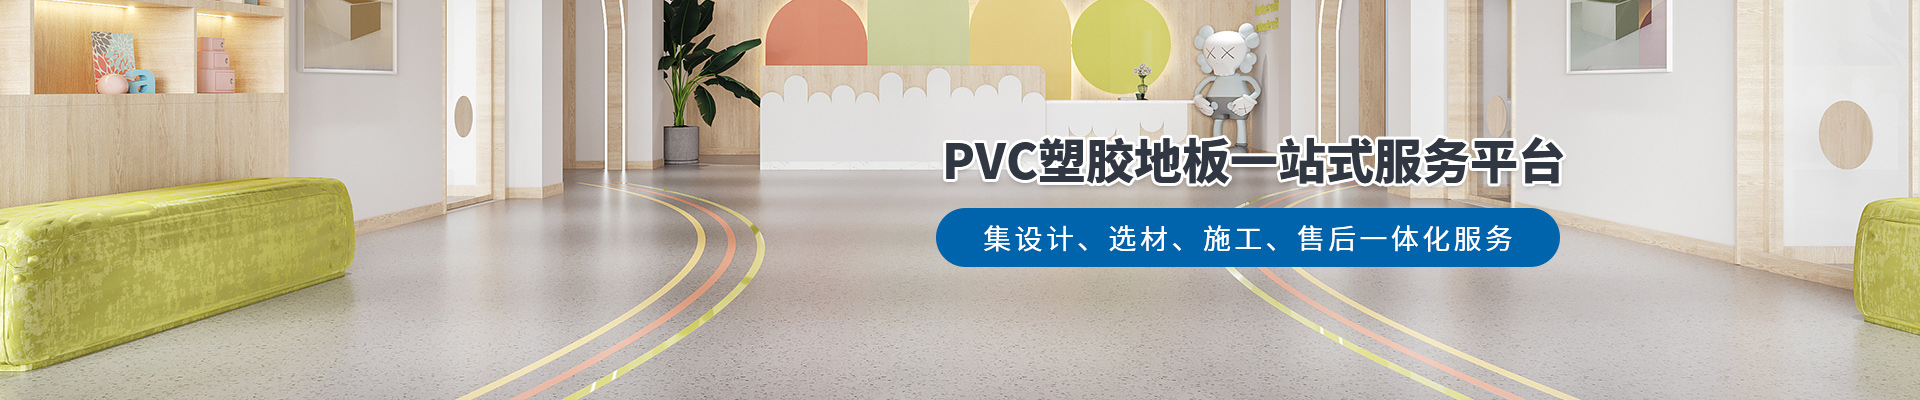 鳳城橡塑，PVC塑膠地板一站式服務平臺